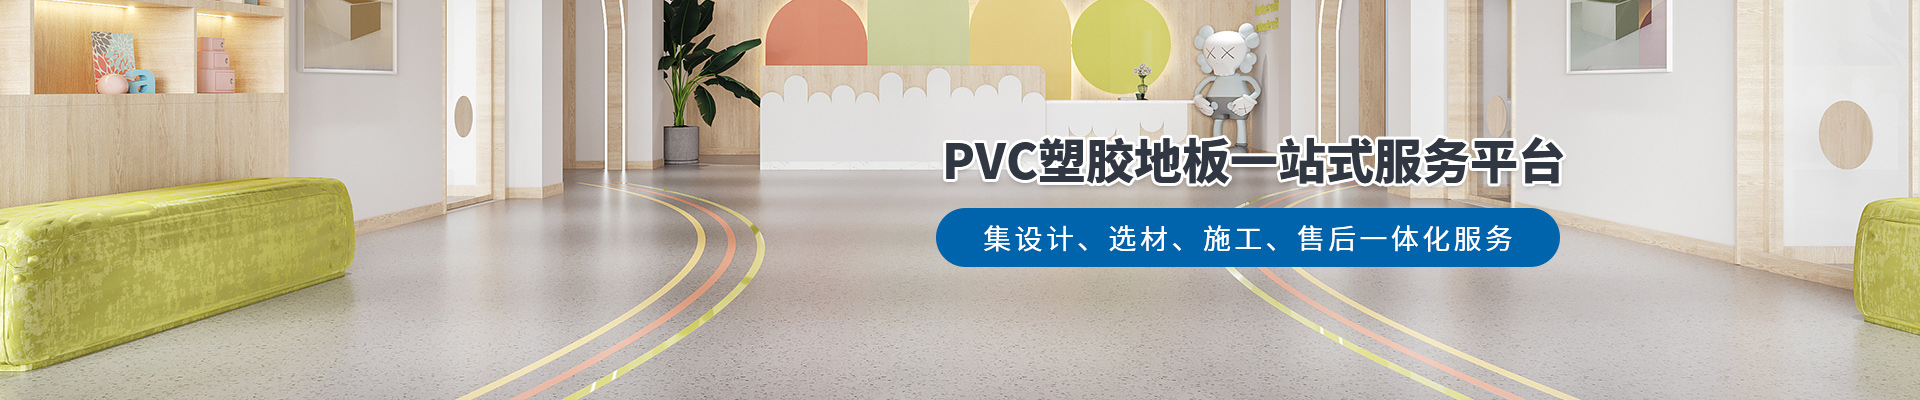 鳳城橡塑，PVC塑膠地板一站式服務平臺